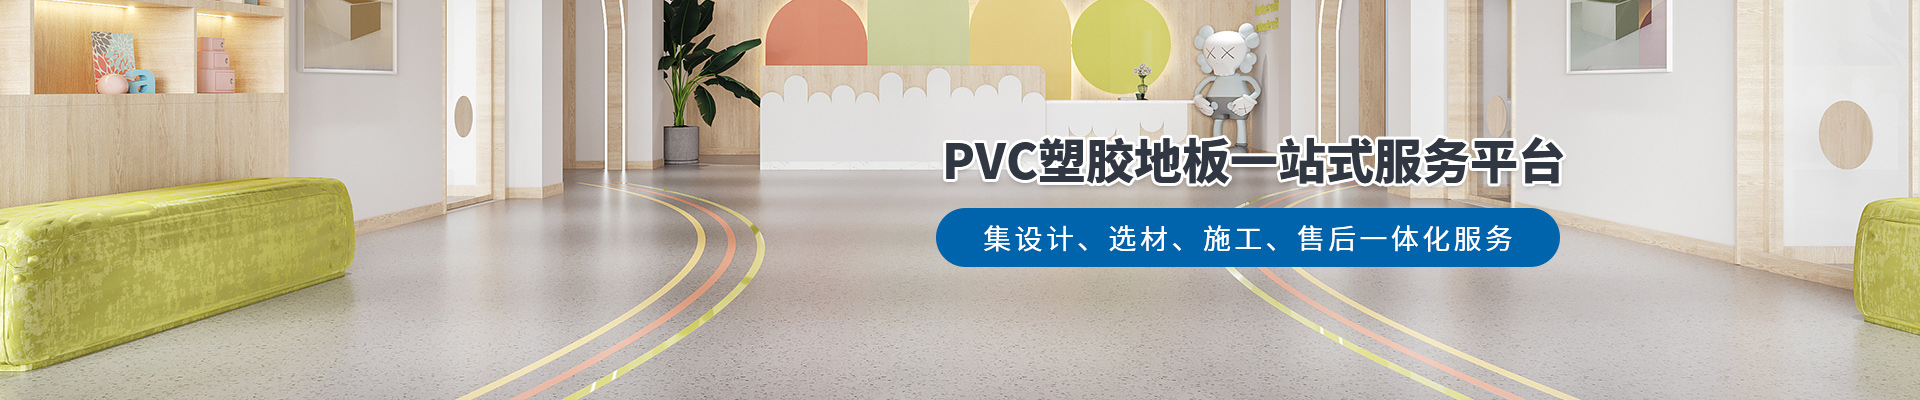 鳳城橡塑，PVC塑膠地板一站式服務平臺